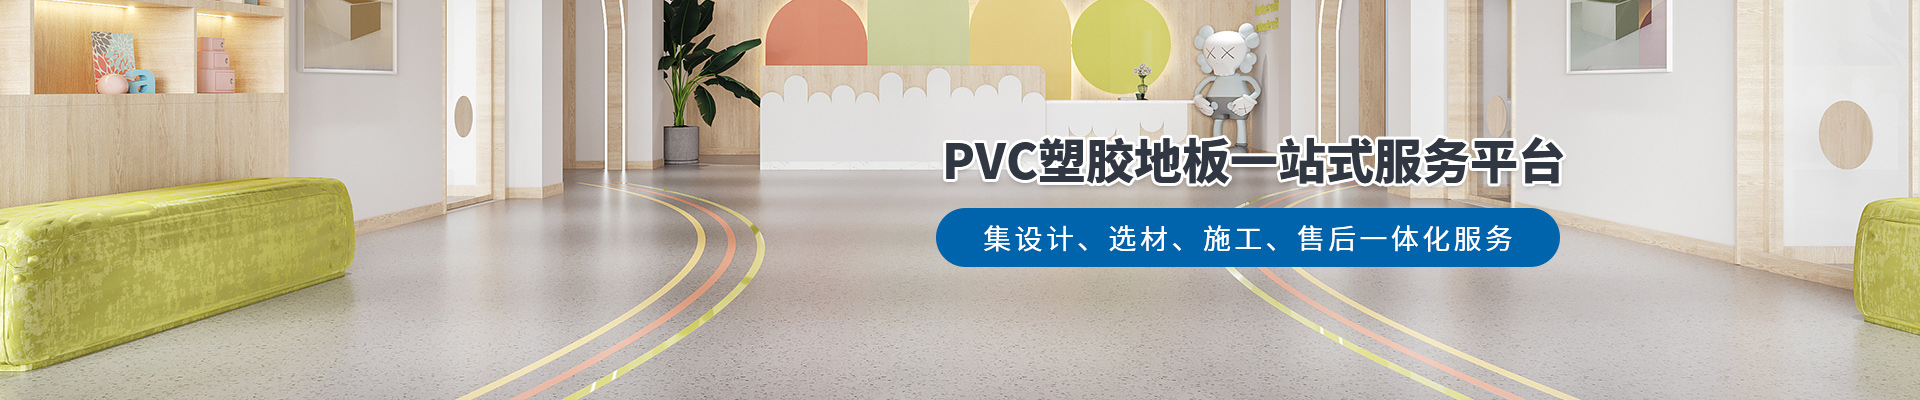 鳳城橡塑，PVC塑膠地板一站式服務平臺